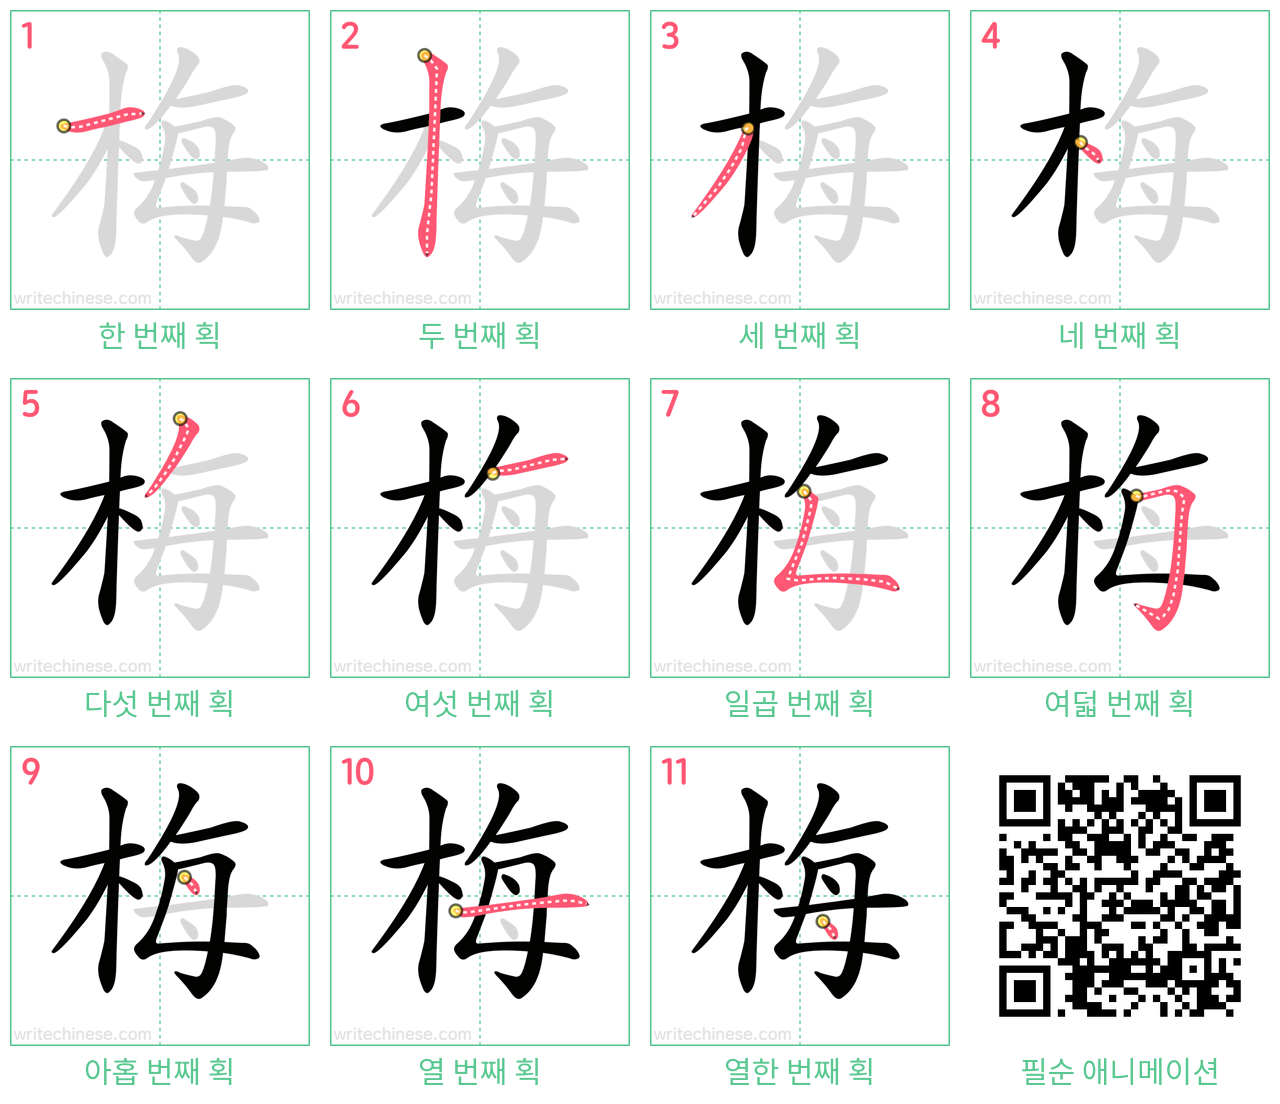 梅 step-by-step stroke order diagrams